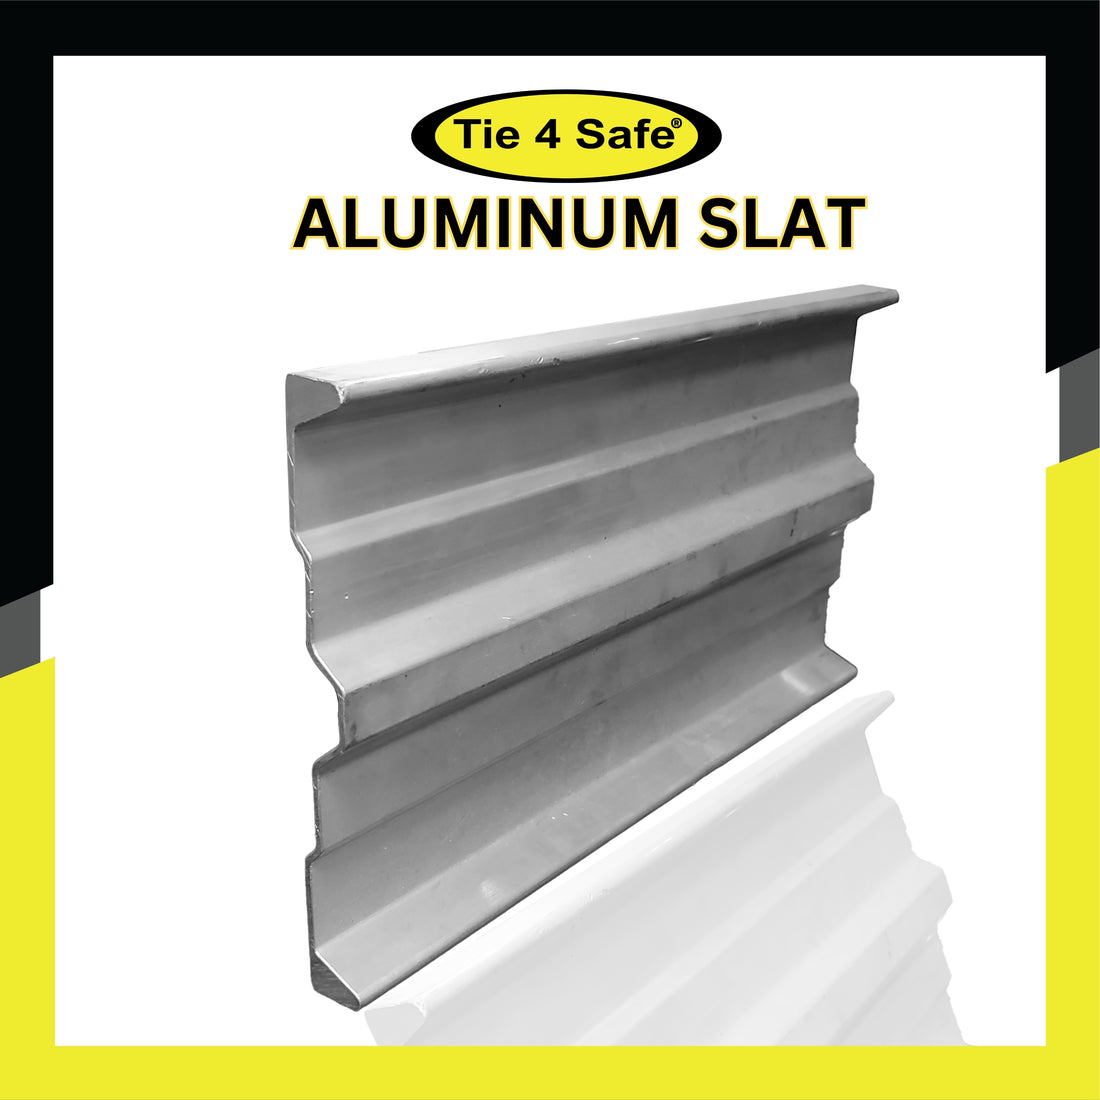 6.5" x 44.5" Aluminum Slat